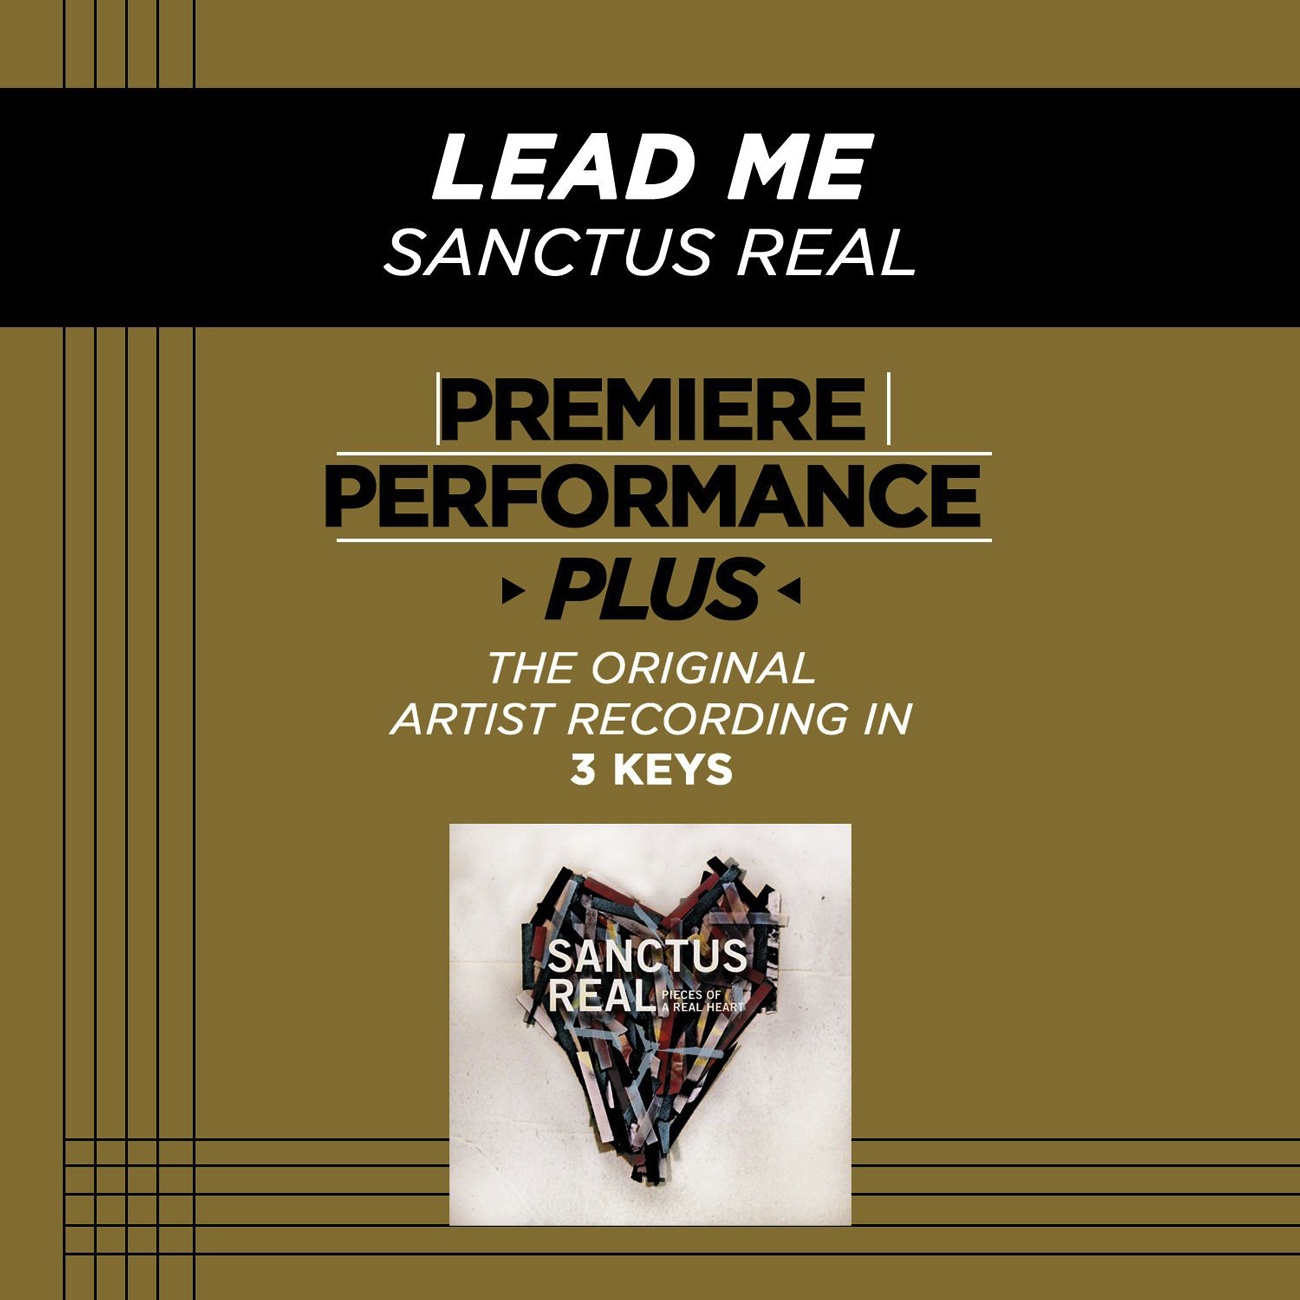 Premiere Performance Plus: Lead Me